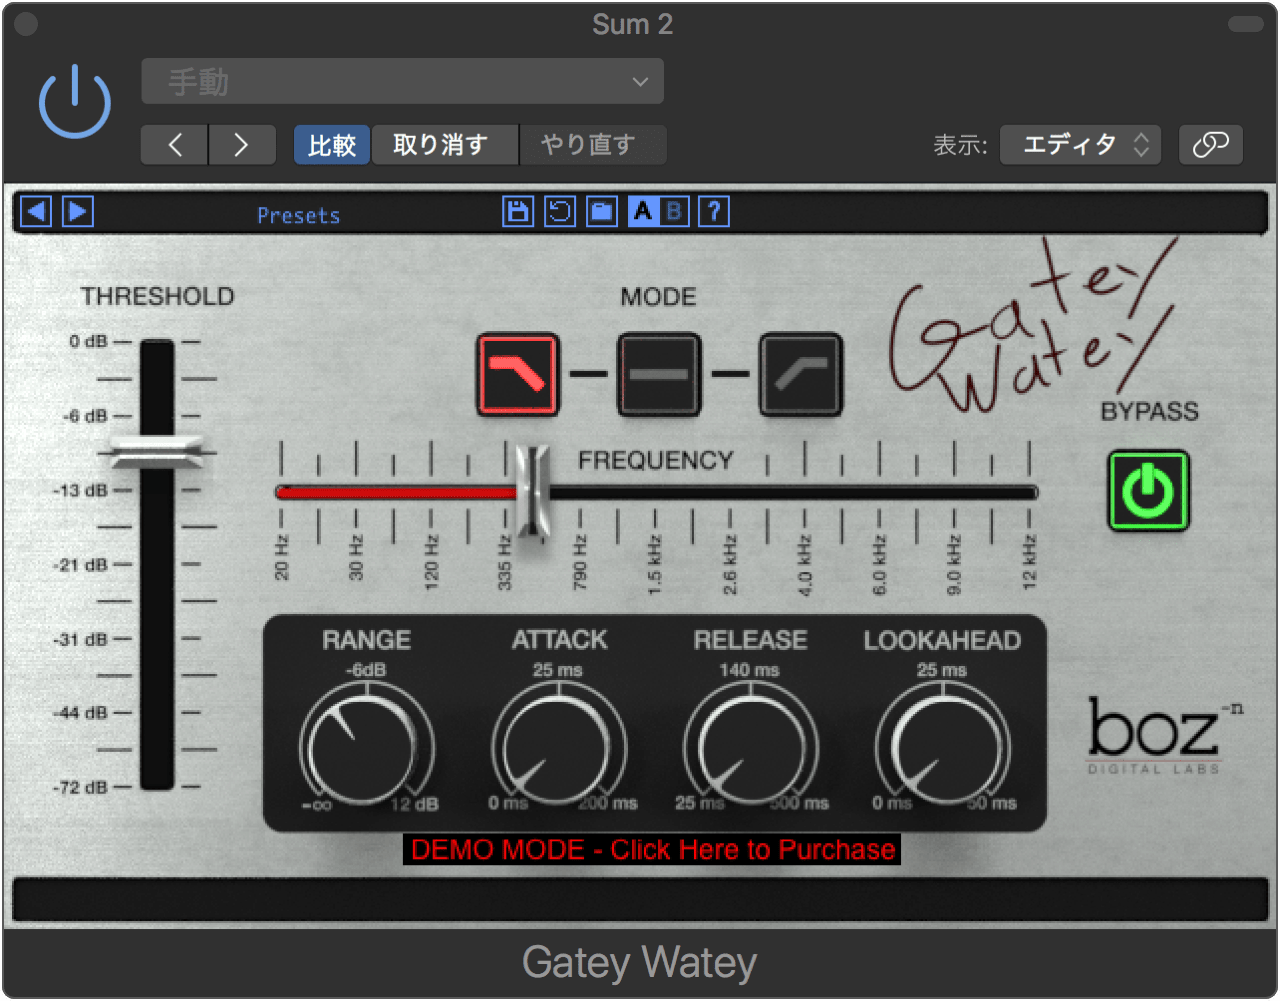 Gatey Watey | Boz Digital Labs